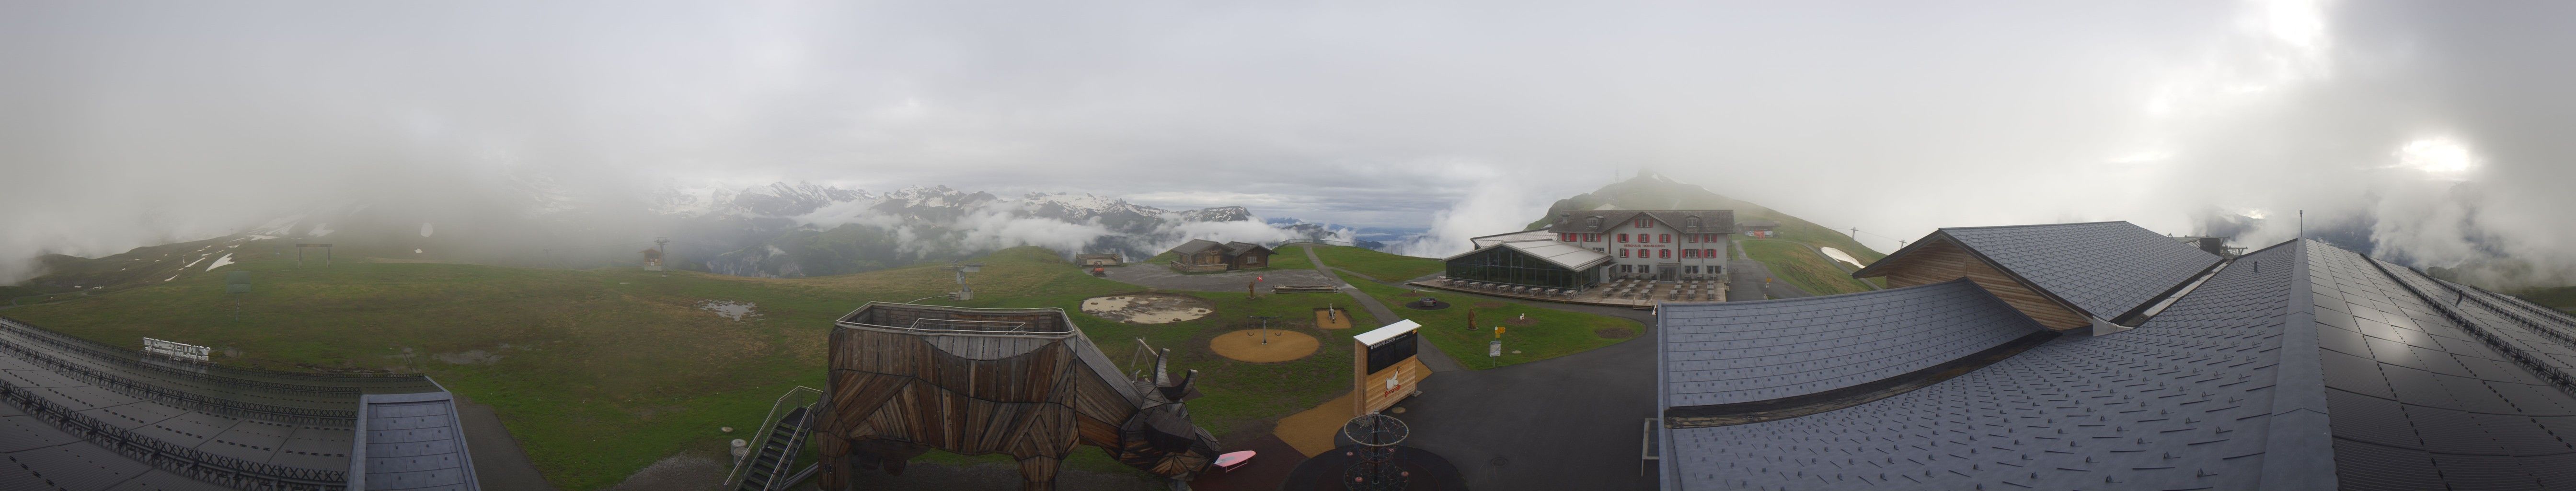 Grindelwald: Männlichen Bergstation Wengen